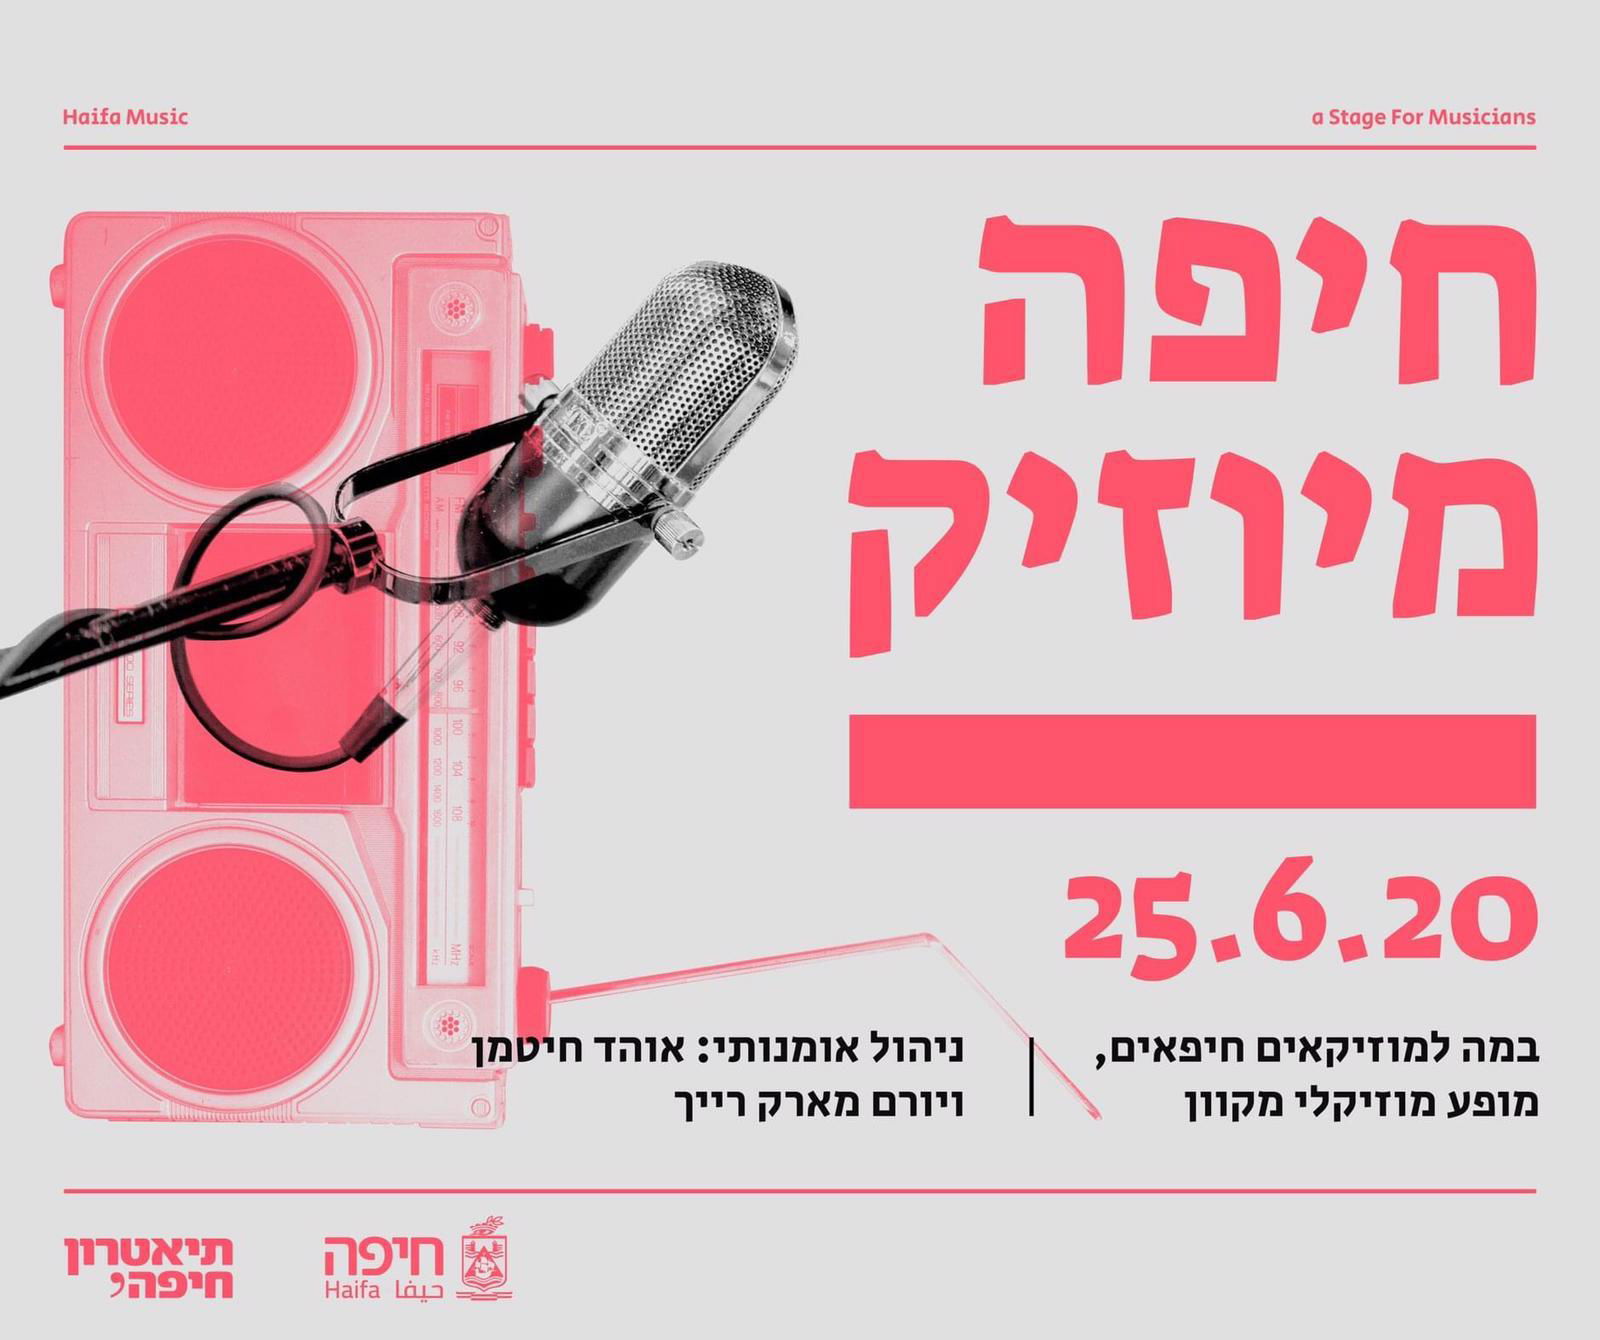 עושים מוזיקה מקורית? הירשמו לפסטיבל המקוון "חיפה מיוזיק"!!